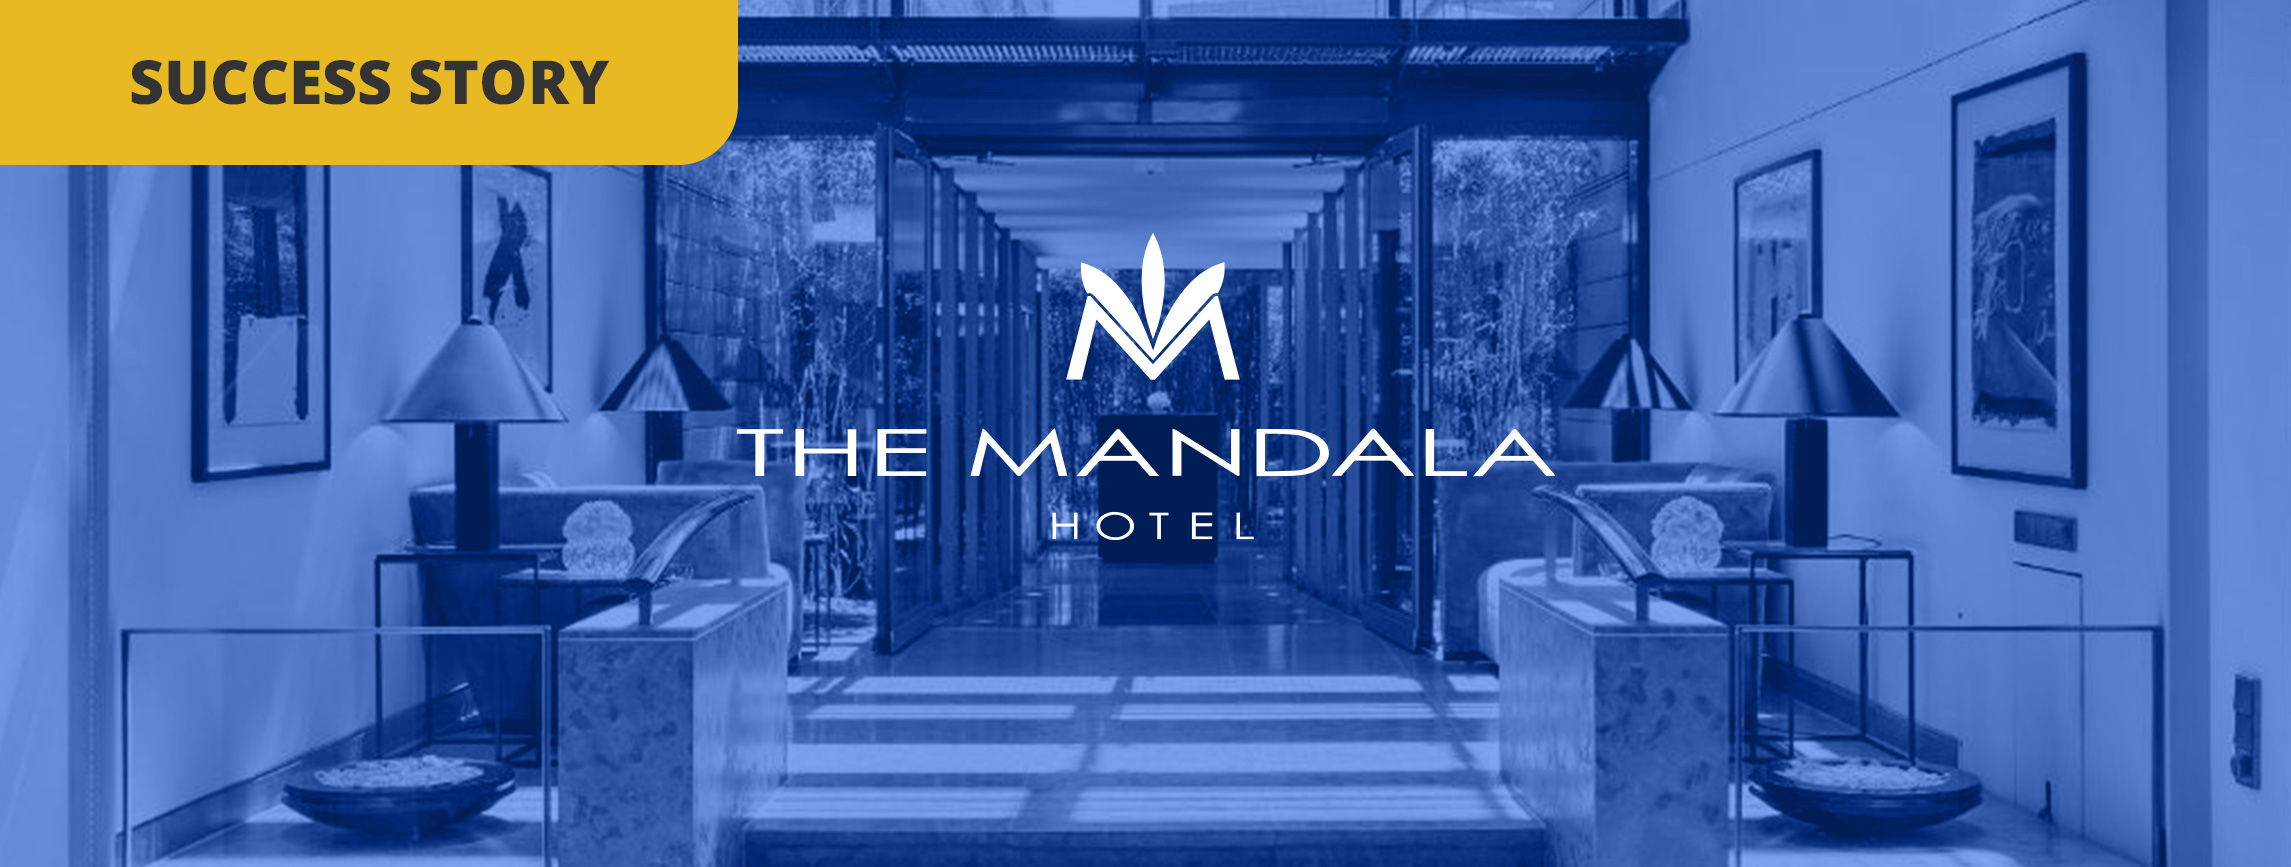 The Mandala Hotel: come sfruttare il questionario during-sta...